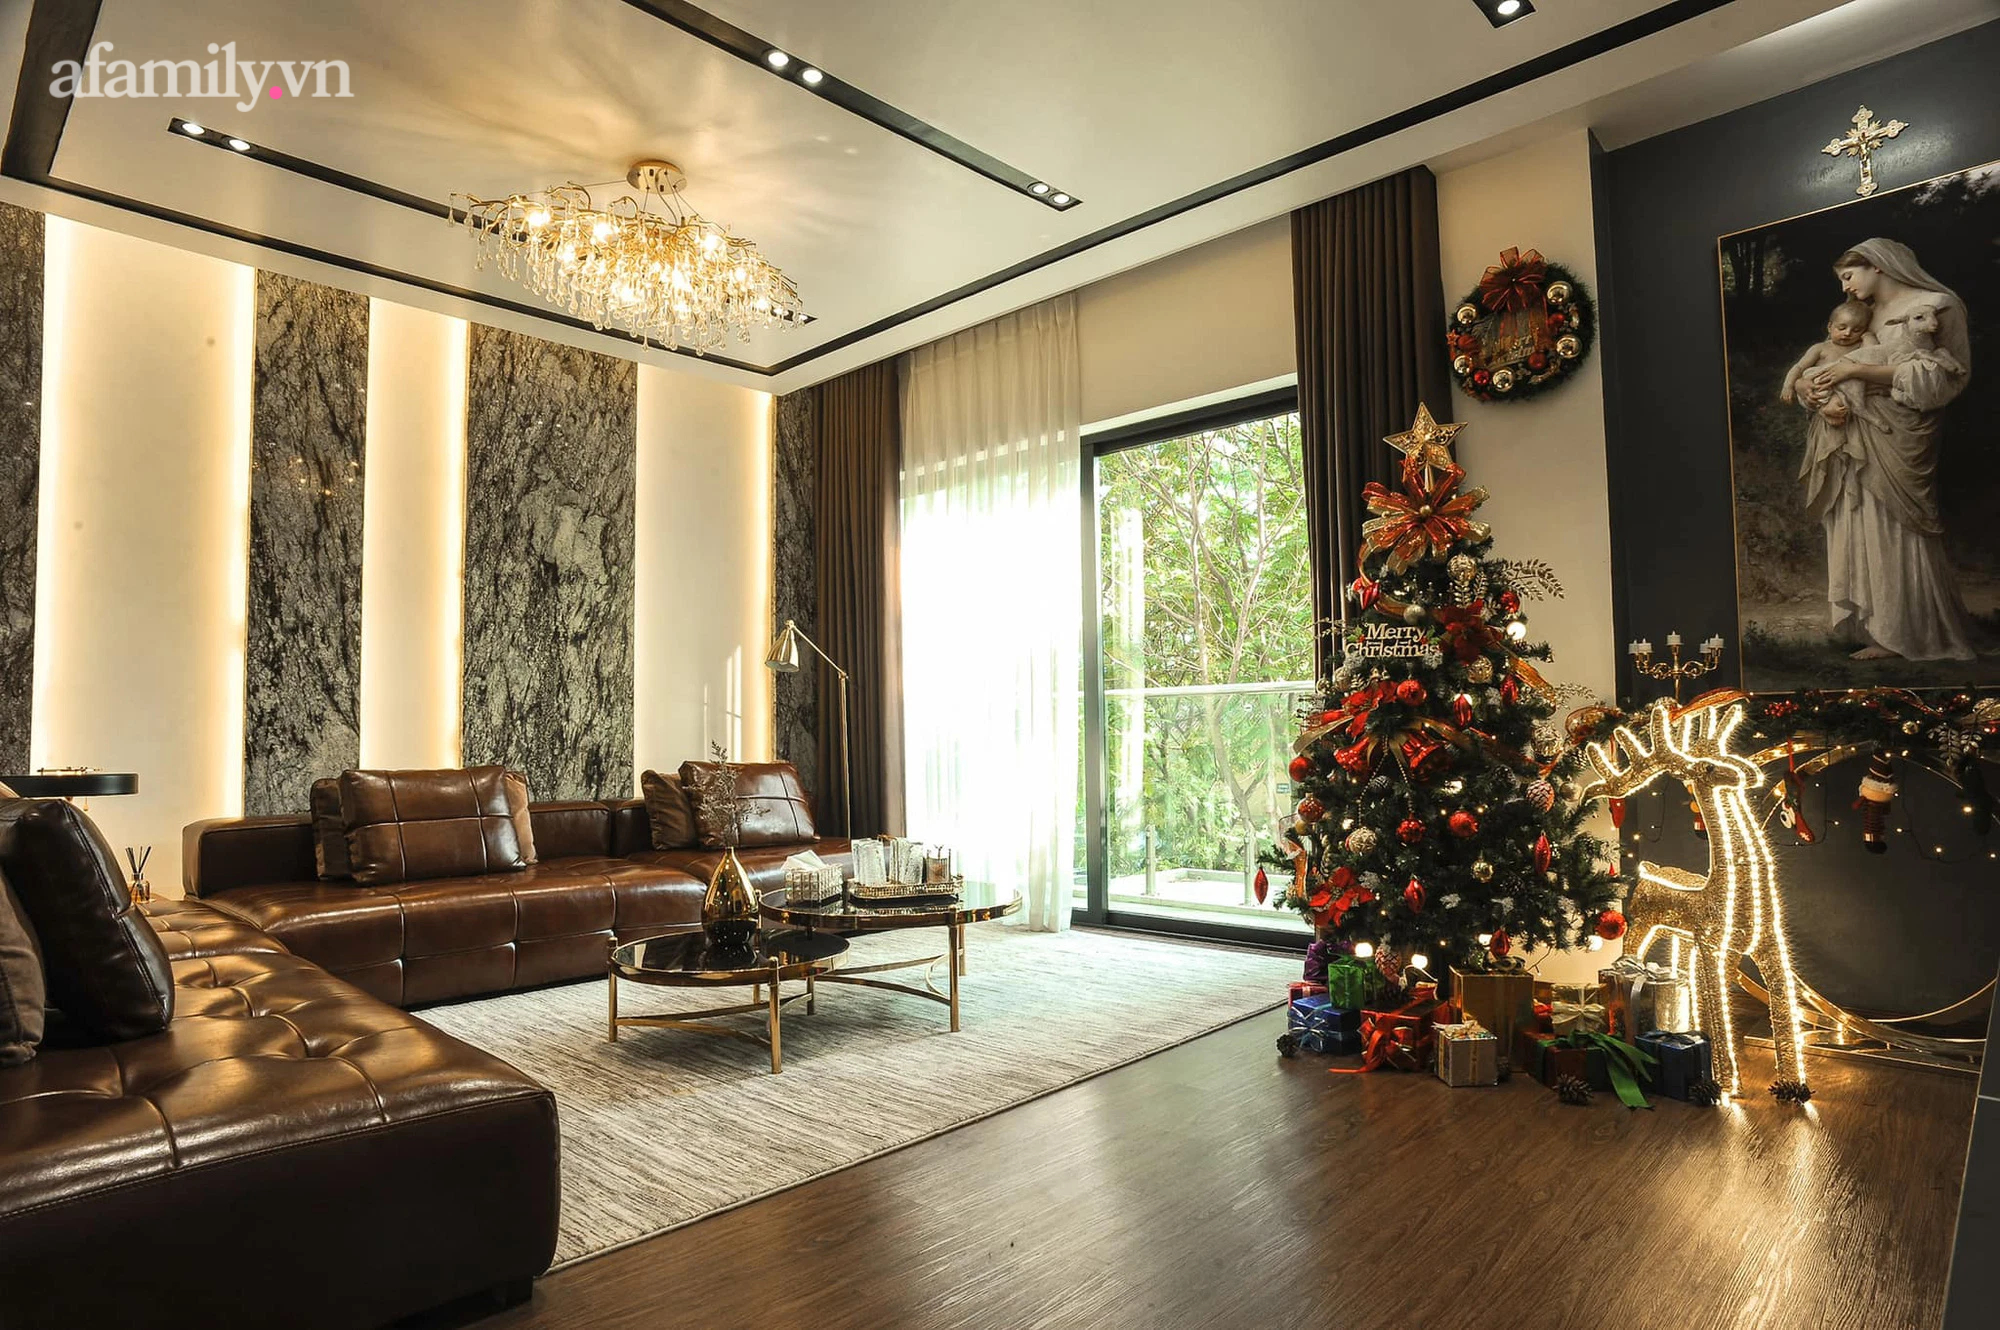 Trang trí nhà đón Giáng sinh ấm cúng của gia đình 3 thế hệ ở Hà Nội, chi phí 10 triệu đồng - Ảnh 2.